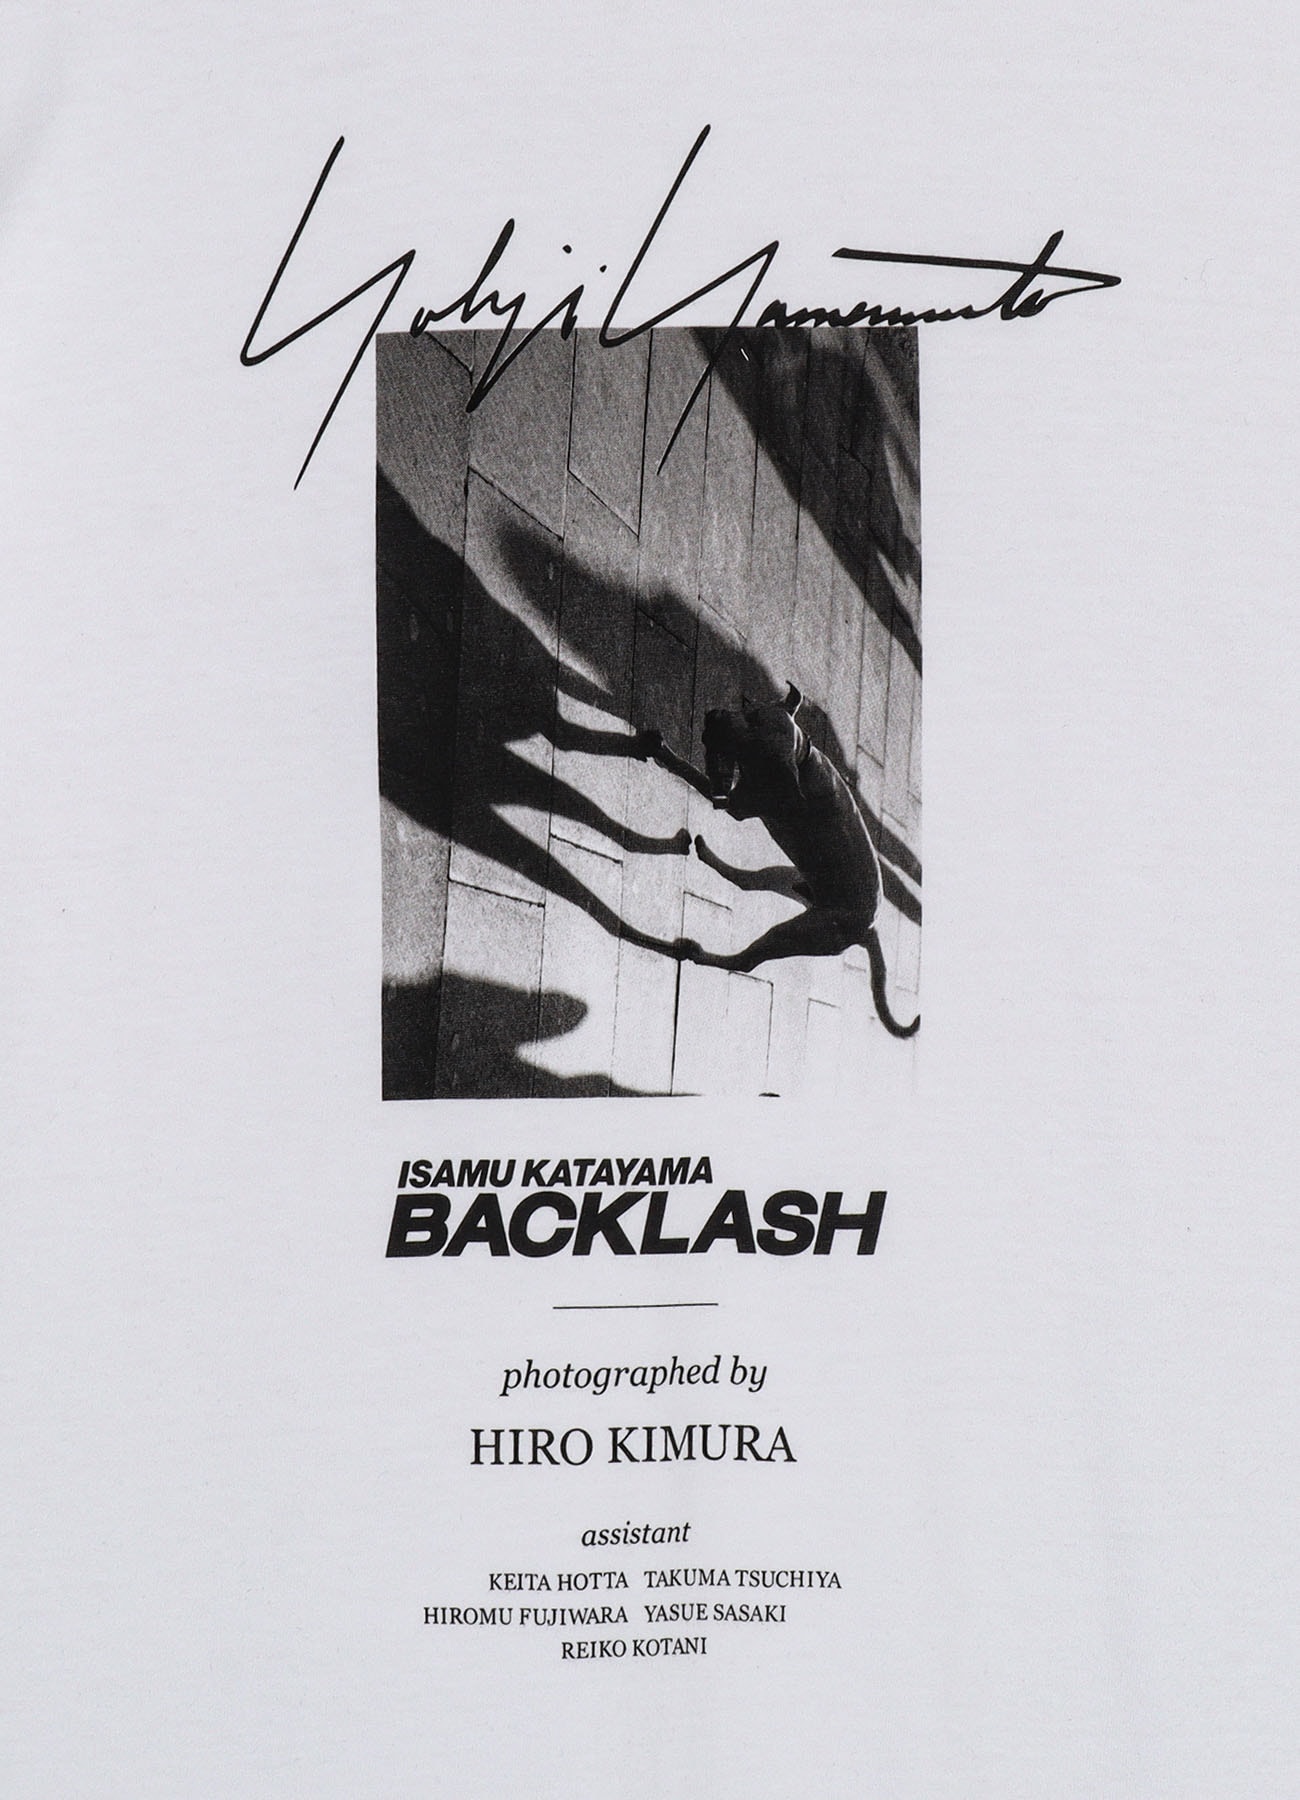 【7/23 10:00 Release】Yohji Yamamoto X BACKLASH PHOTOGRAPH T-SHIRT